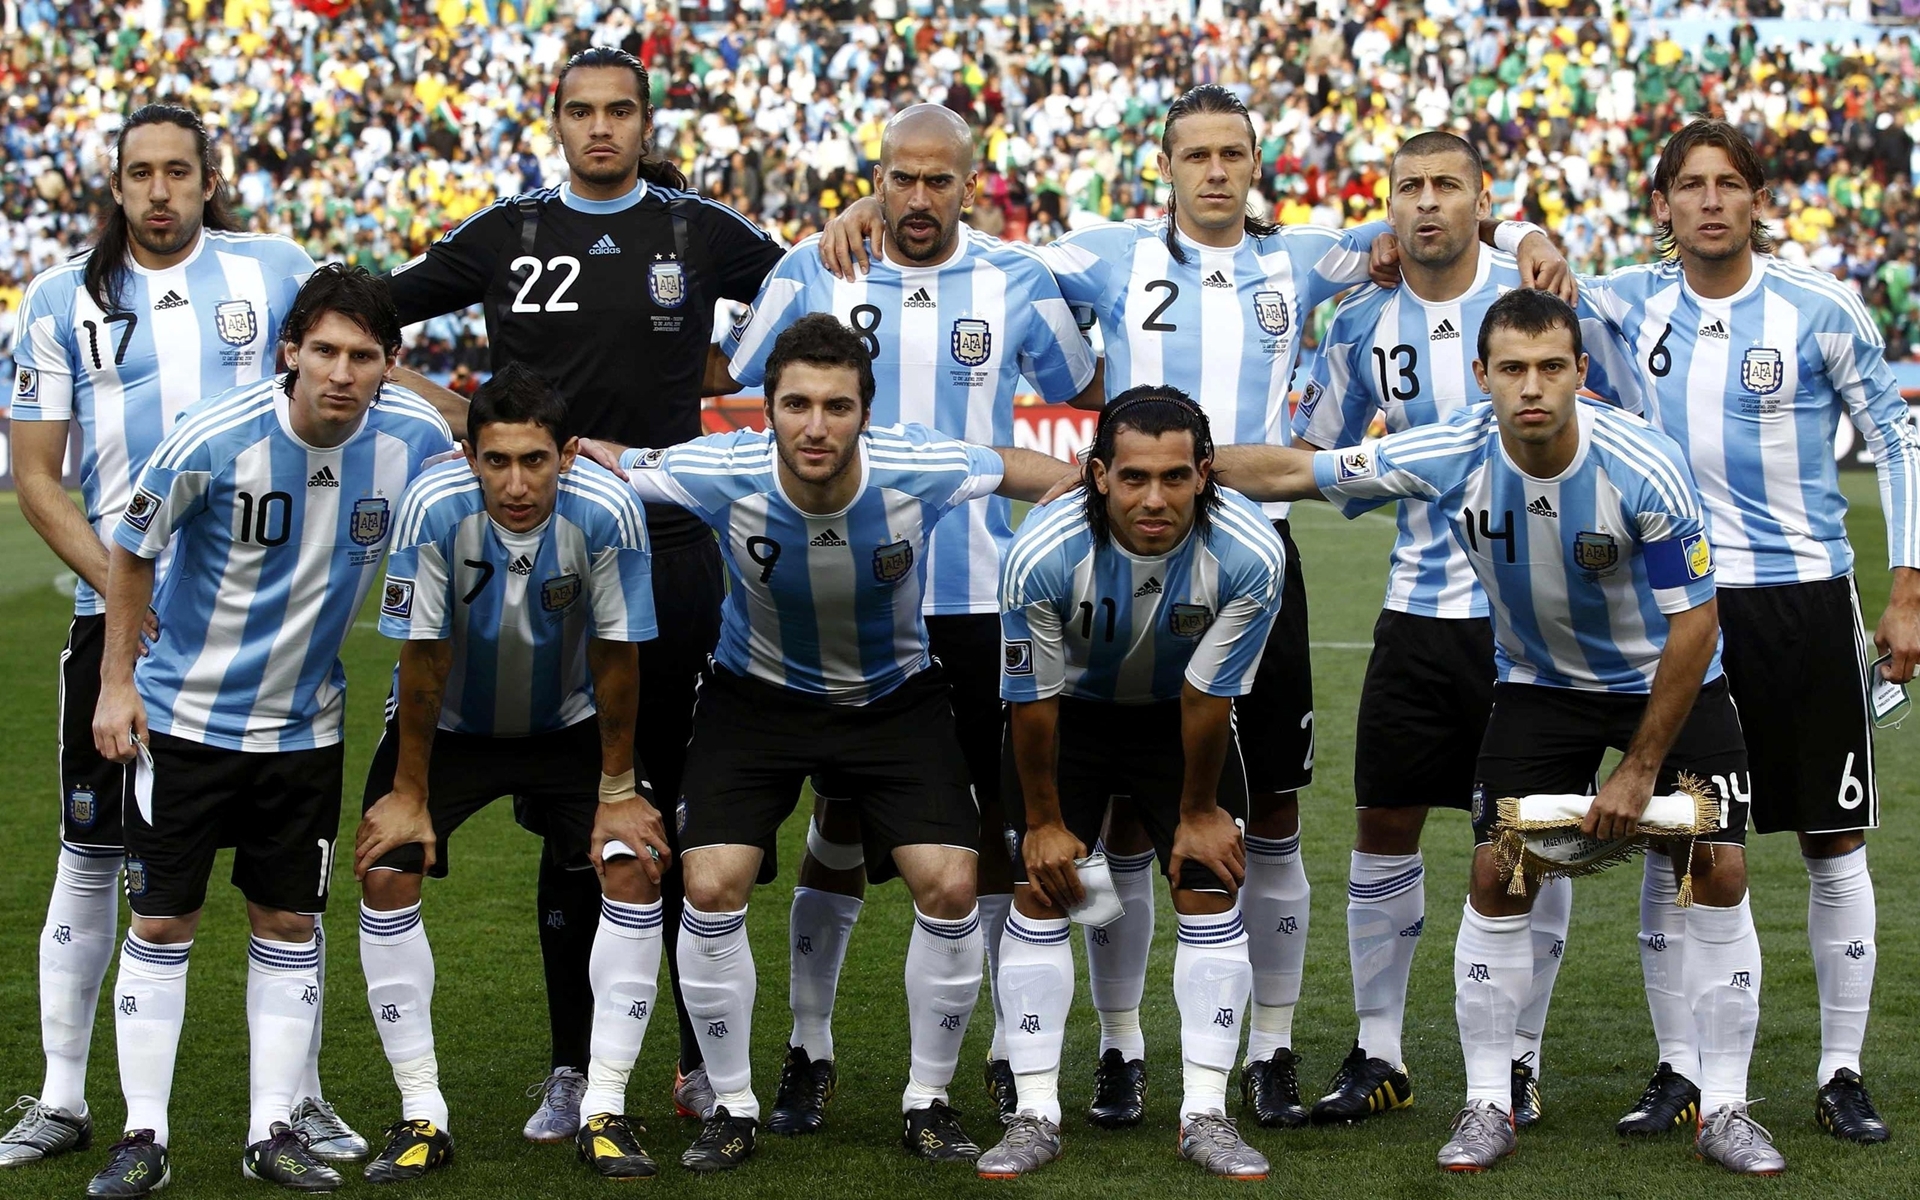 Скачать обои Сборная Аргентины По Футболу на телефон бесплатно